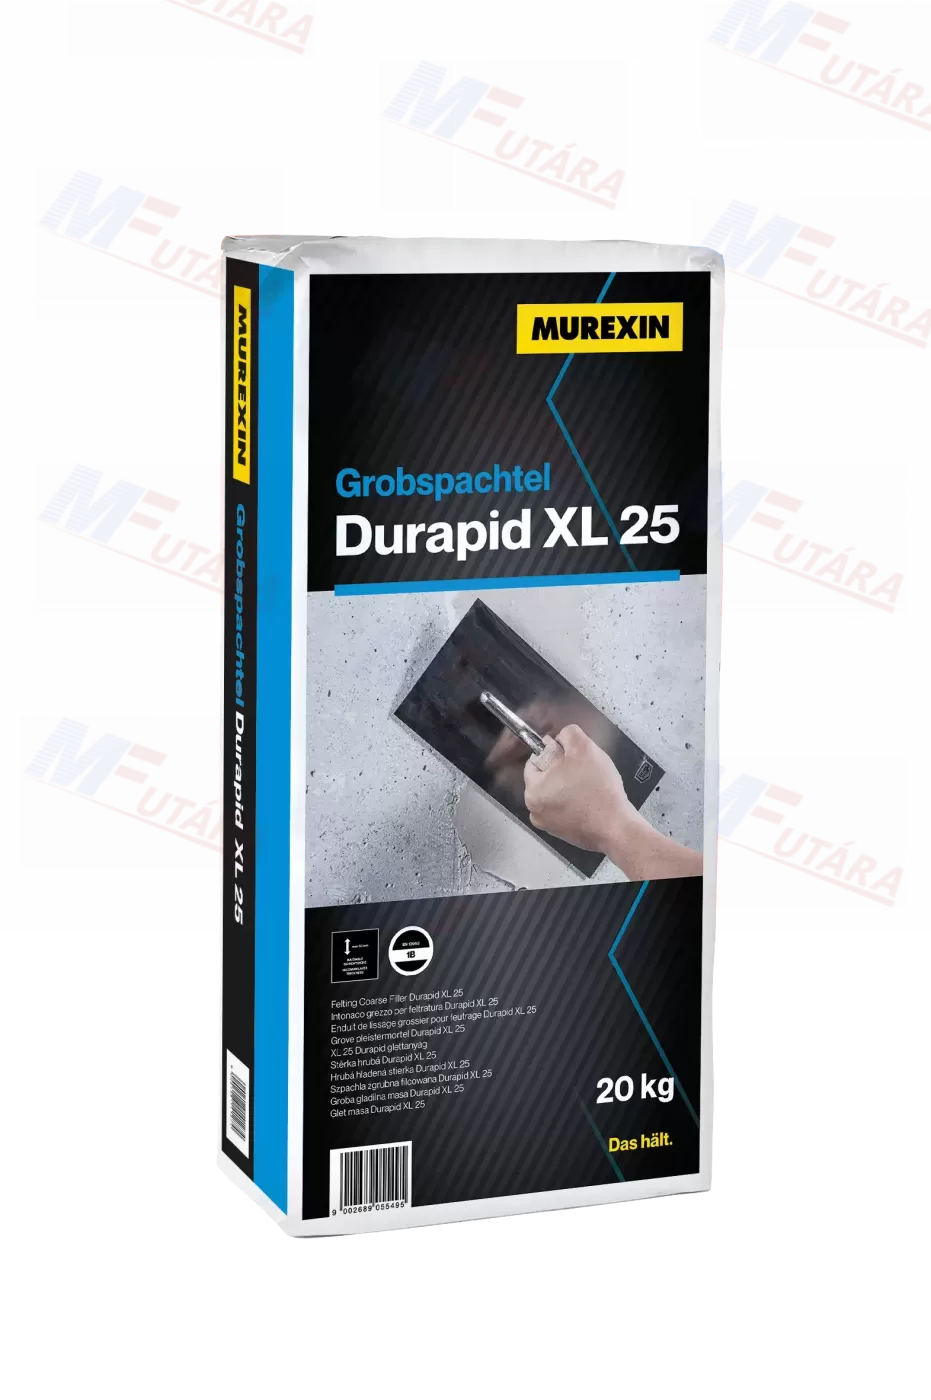 Murexin GROBSPACHTEL DURAPID XL 25